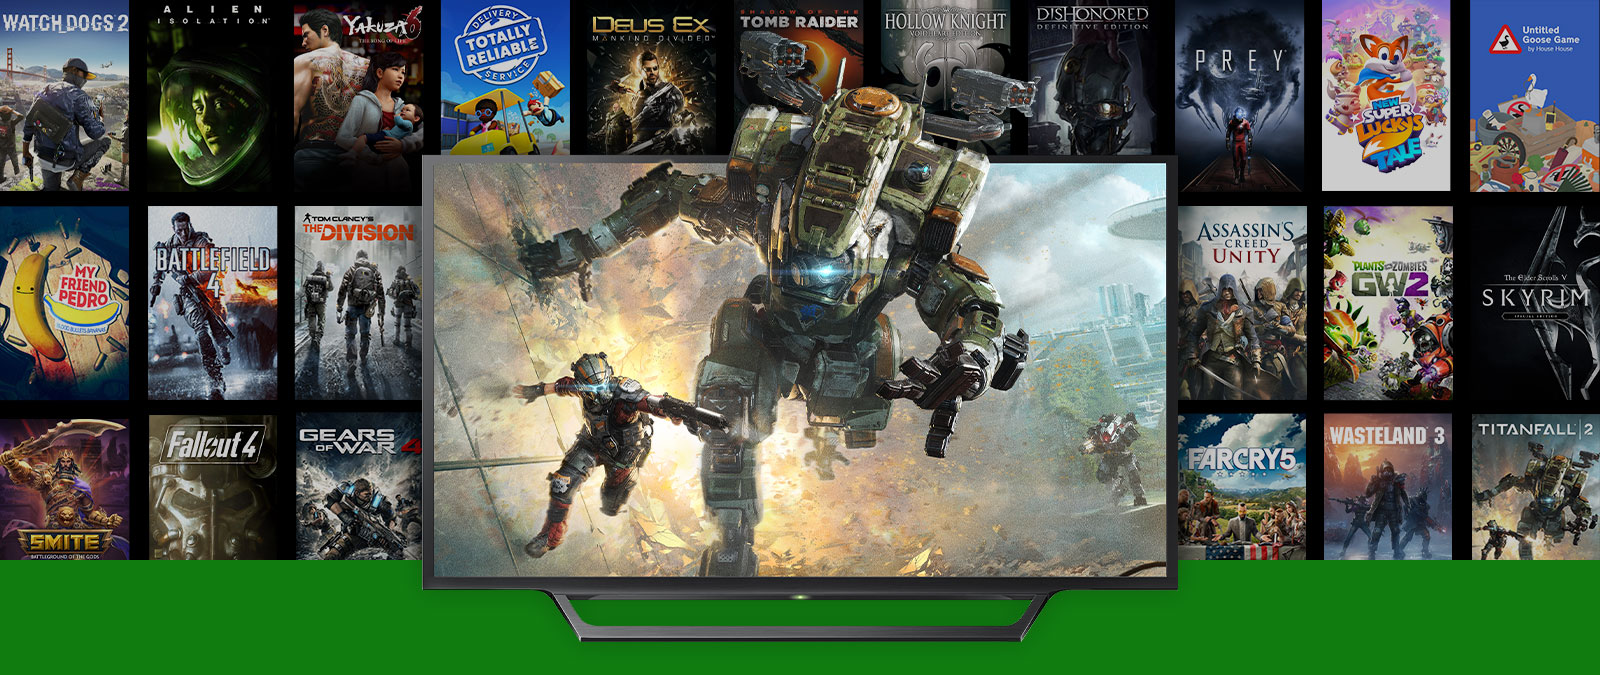 Titanfall 2-personages springen uit een tv met meerdere boxshots van backward compatible-games en FPS boosted-games op de achtergrond